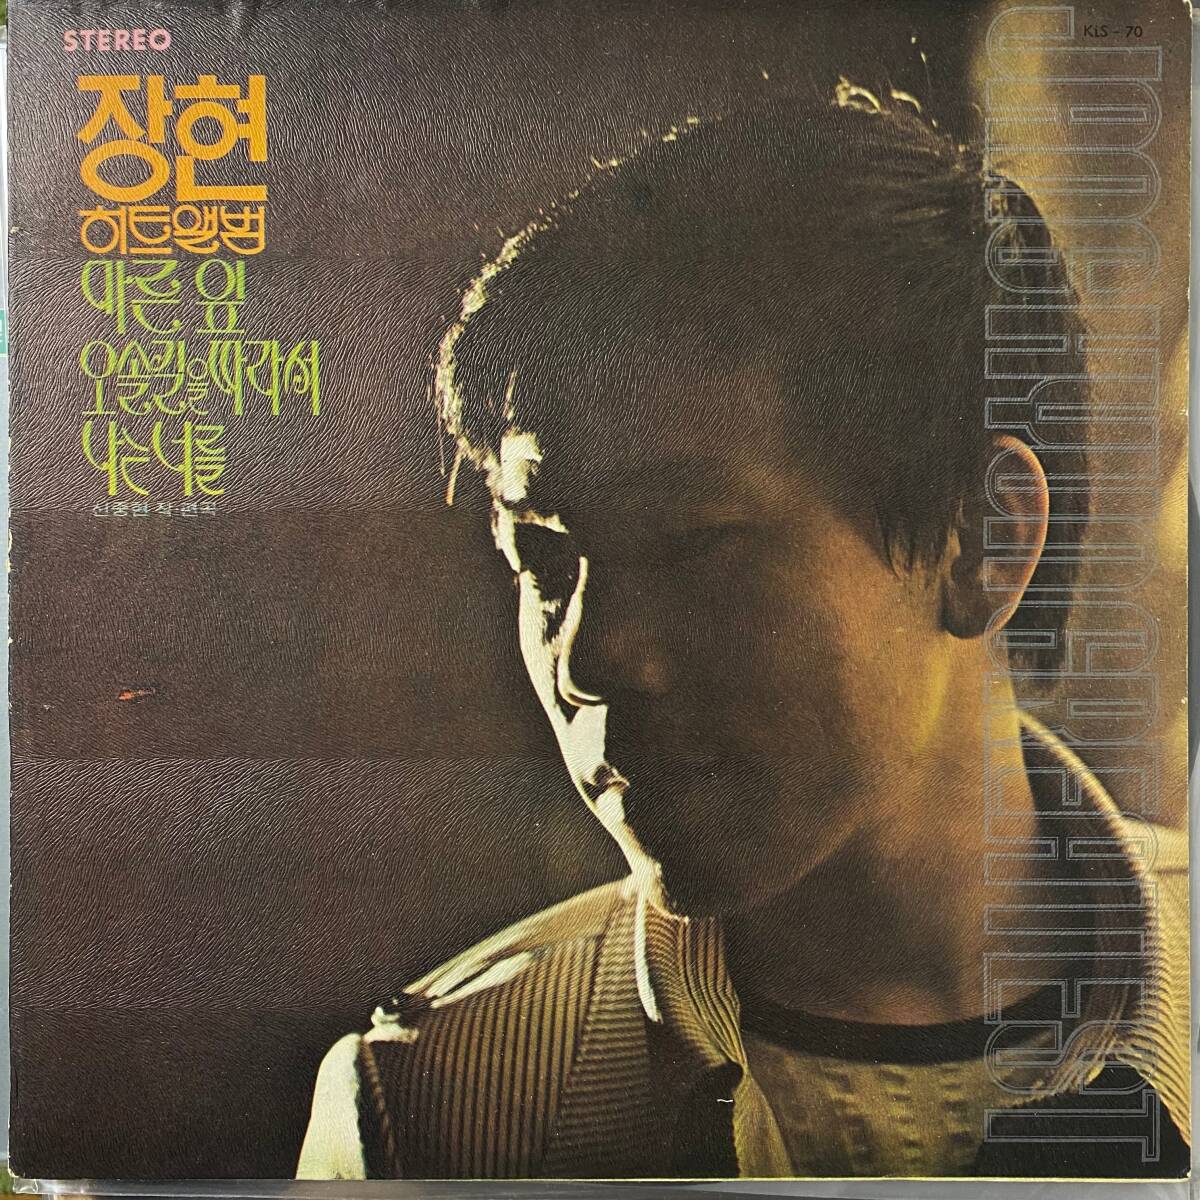 激レア 韓国歌謡サイケロック名盤 LP Jang Hyun Shin Jung Hyun Collection 1973 KLS-70 Dope Drums Breaks Grooves Sampling の画像1